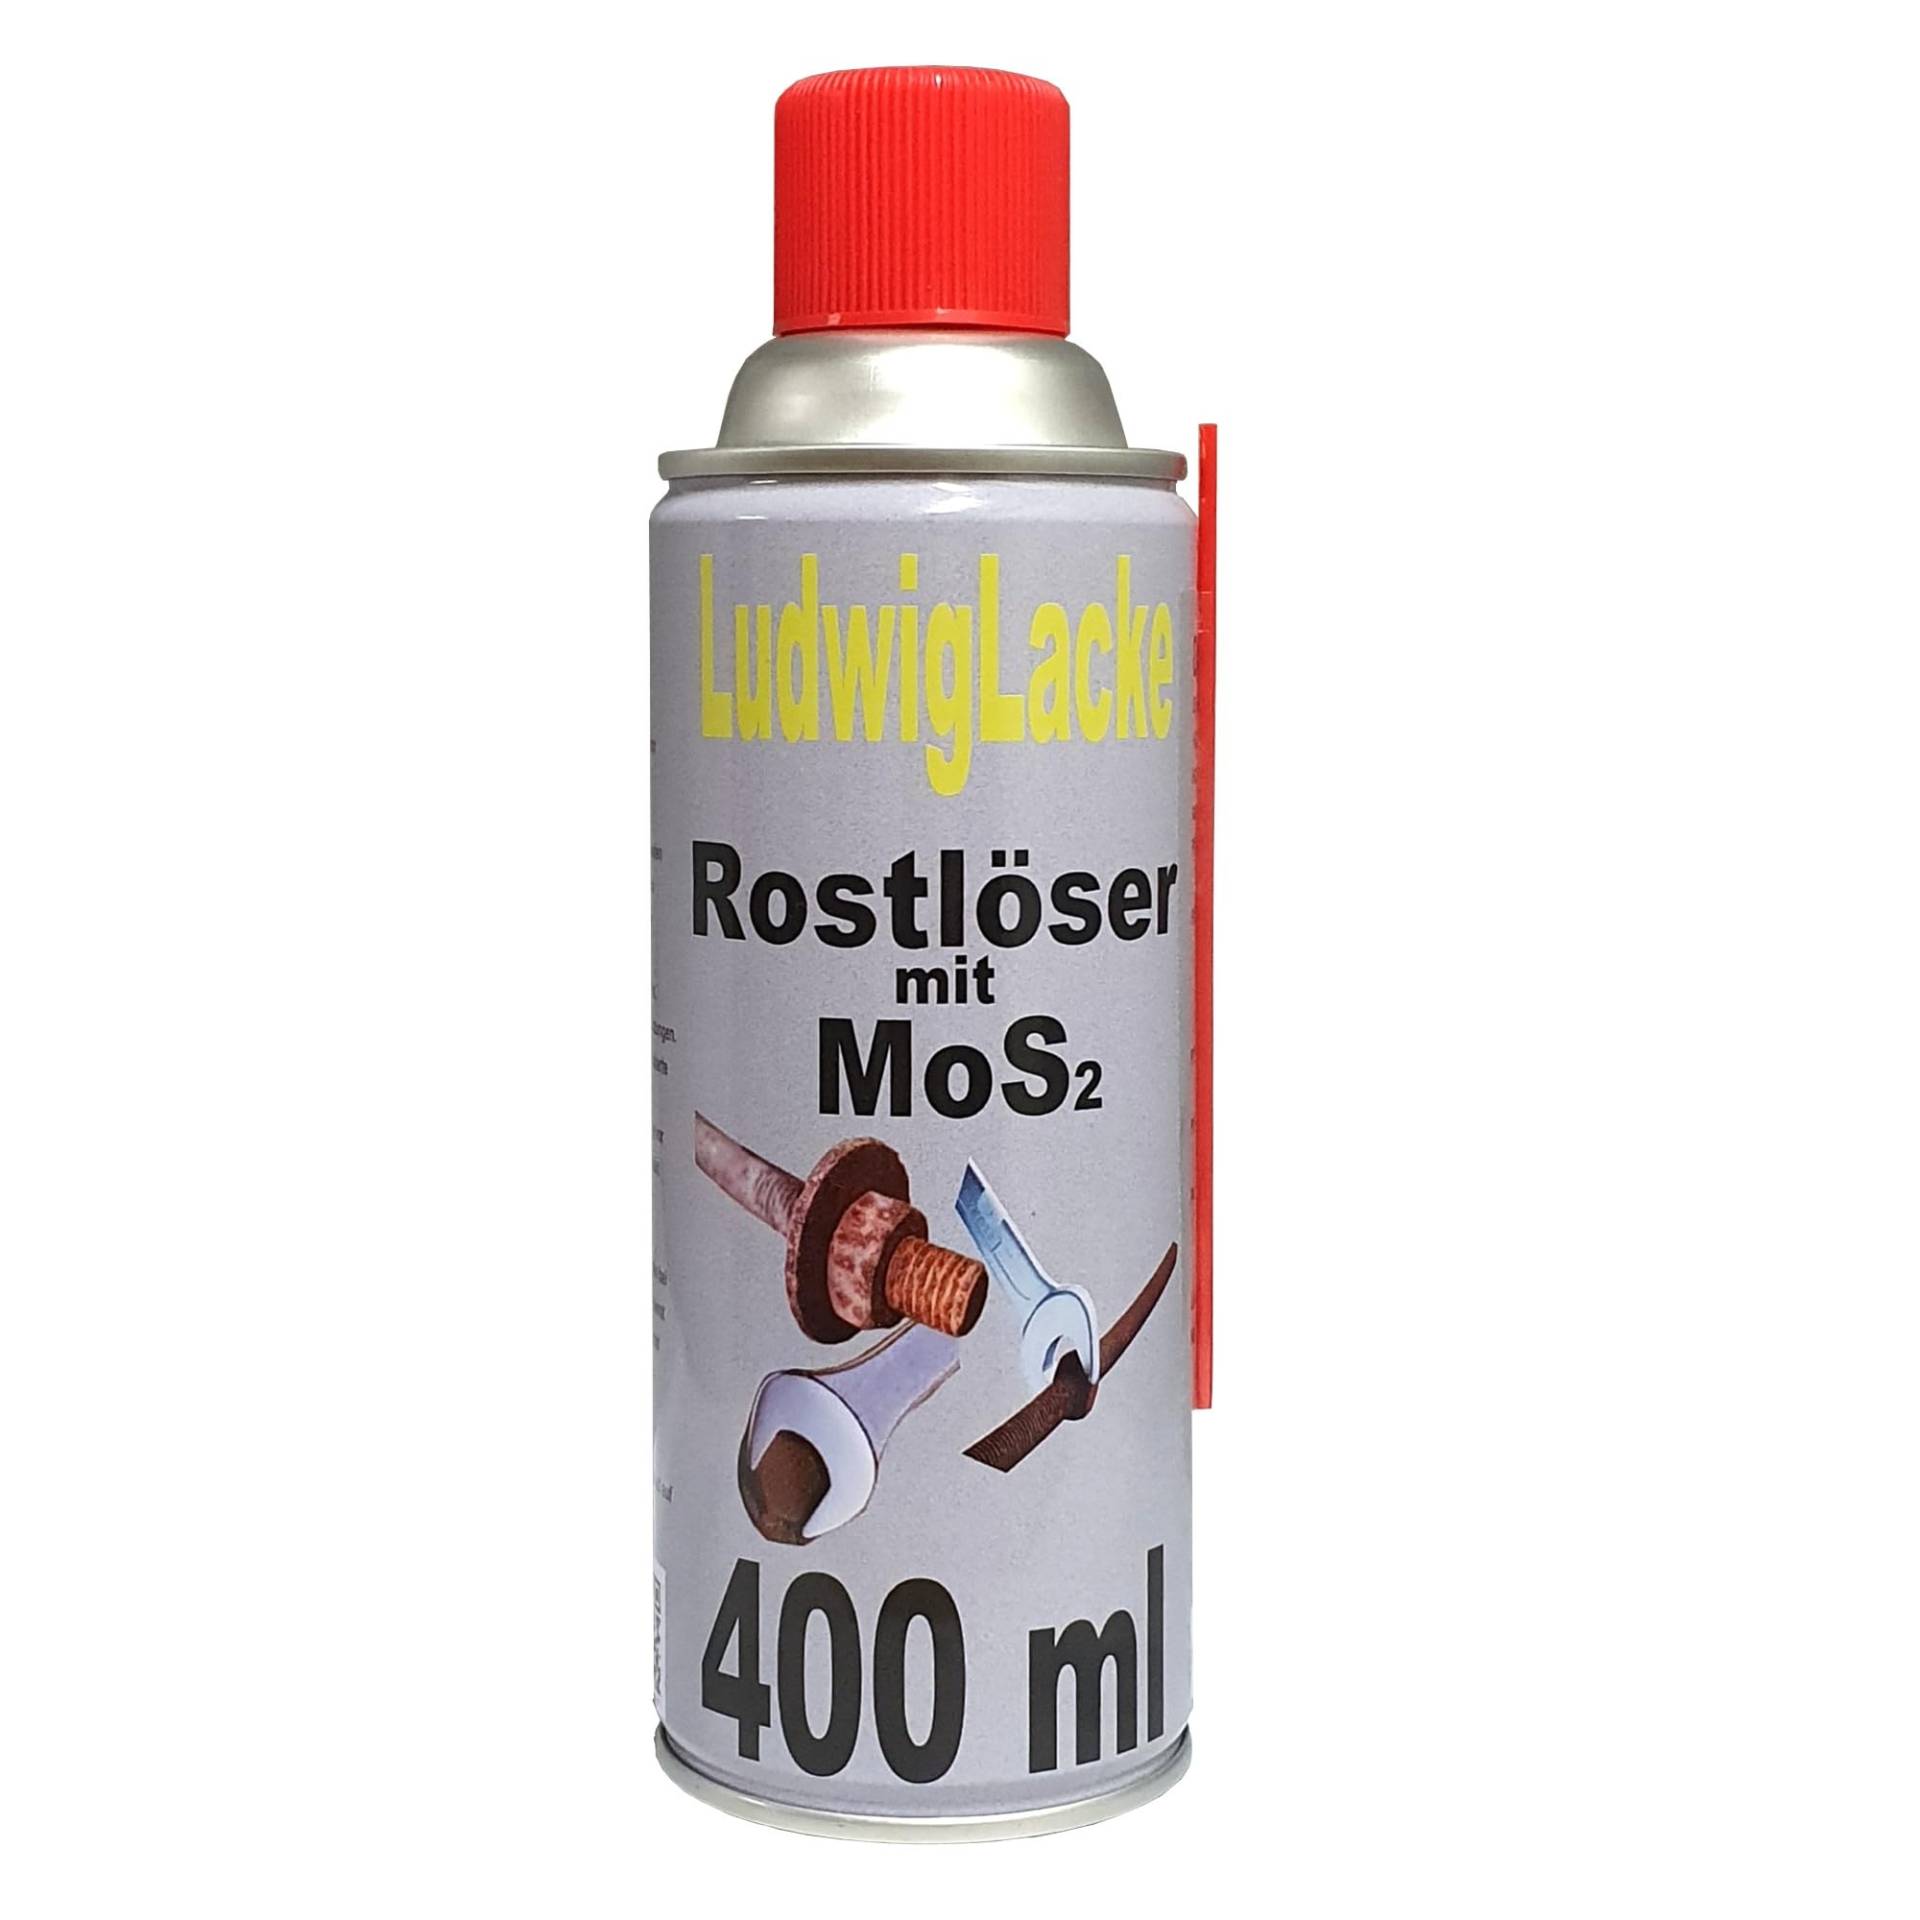 Rostlöser 6 x Spraydose 400 ml von Ludwiglacke